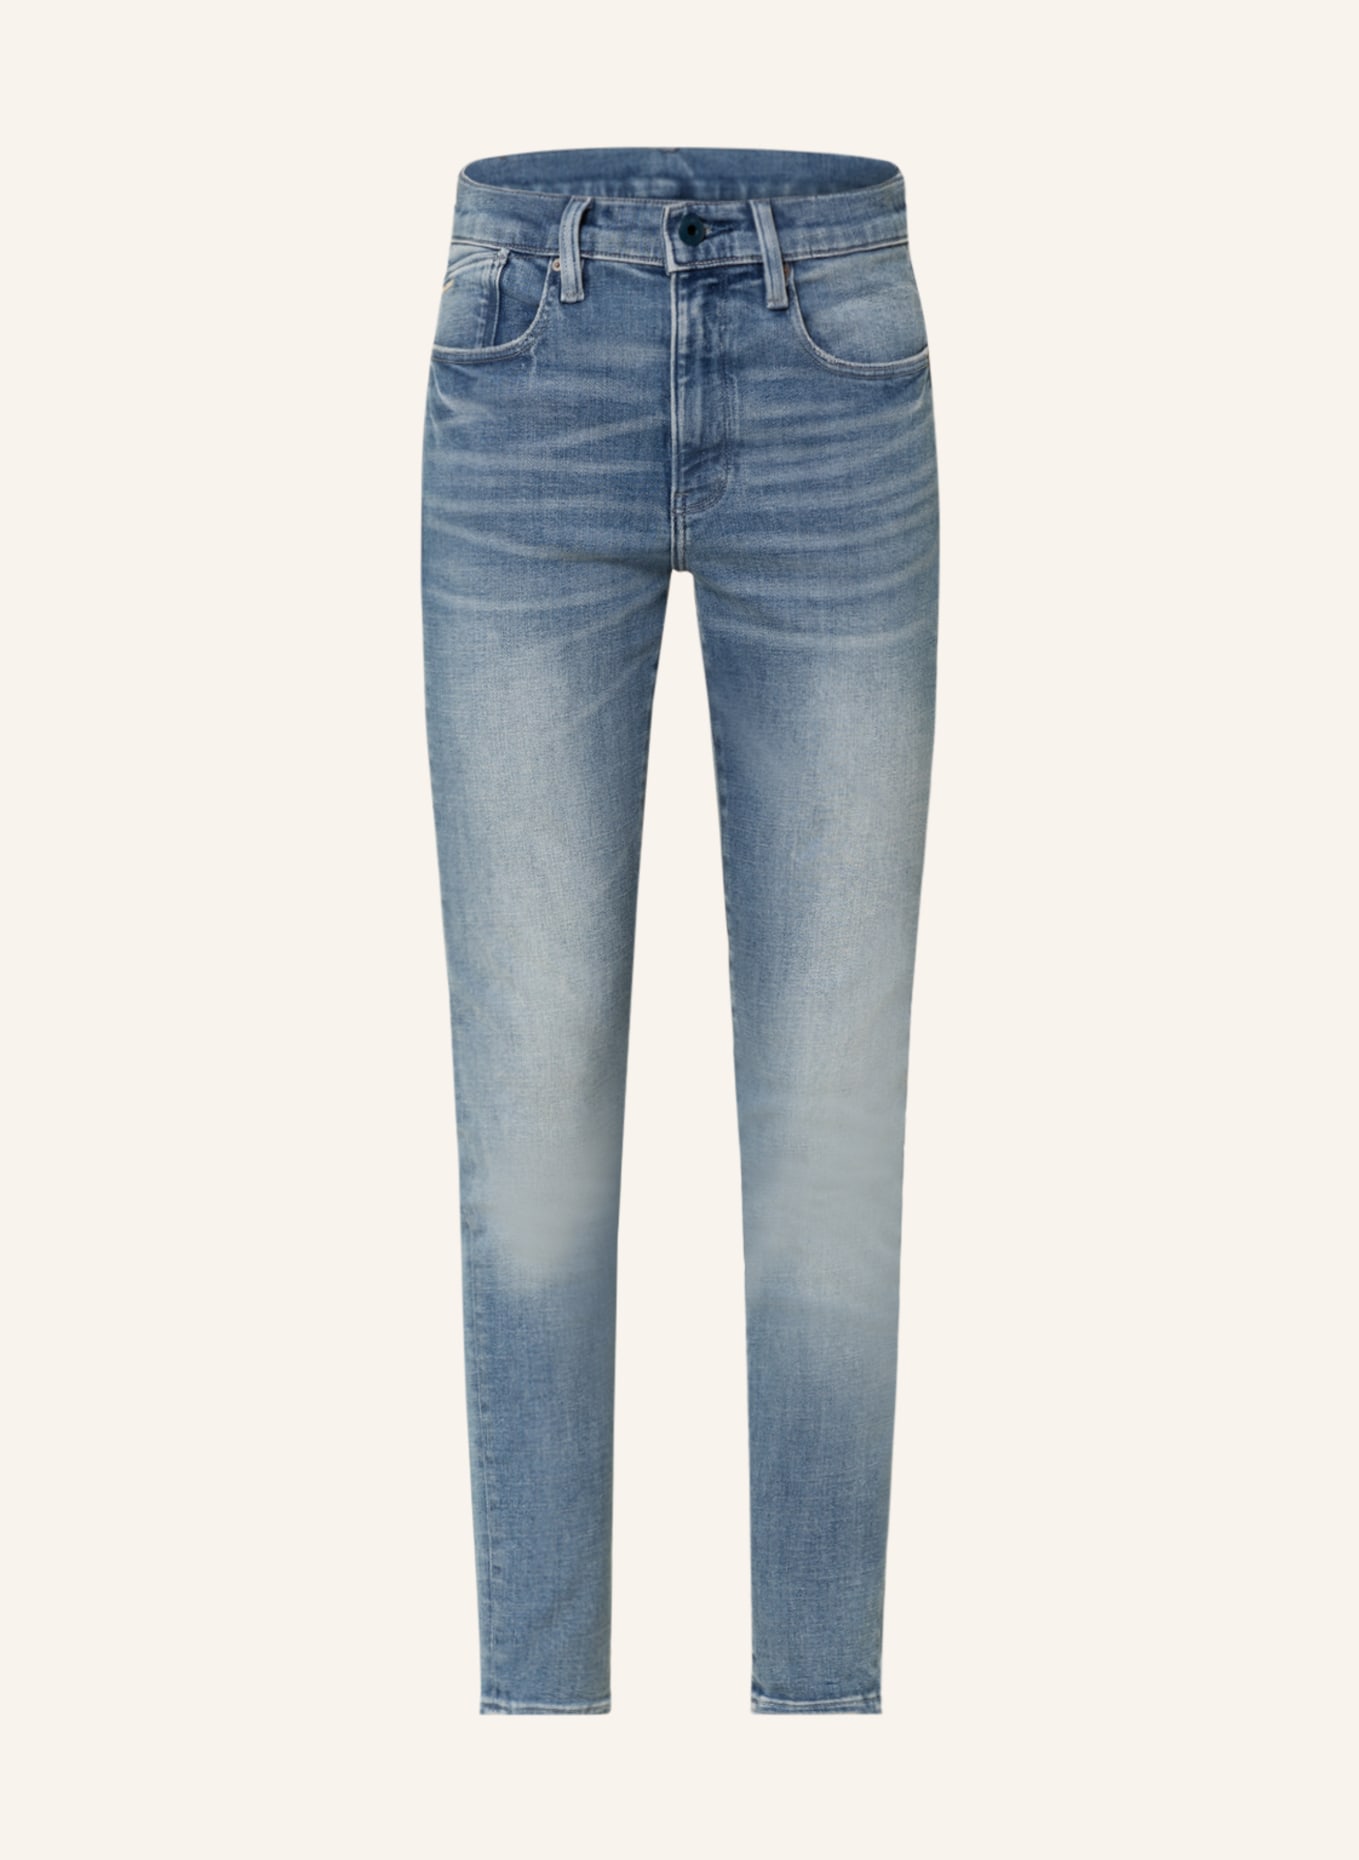 G-Star RAW Skinny Jeans LHANA, Farbe: D898 sun faded niagara (Bild 1)